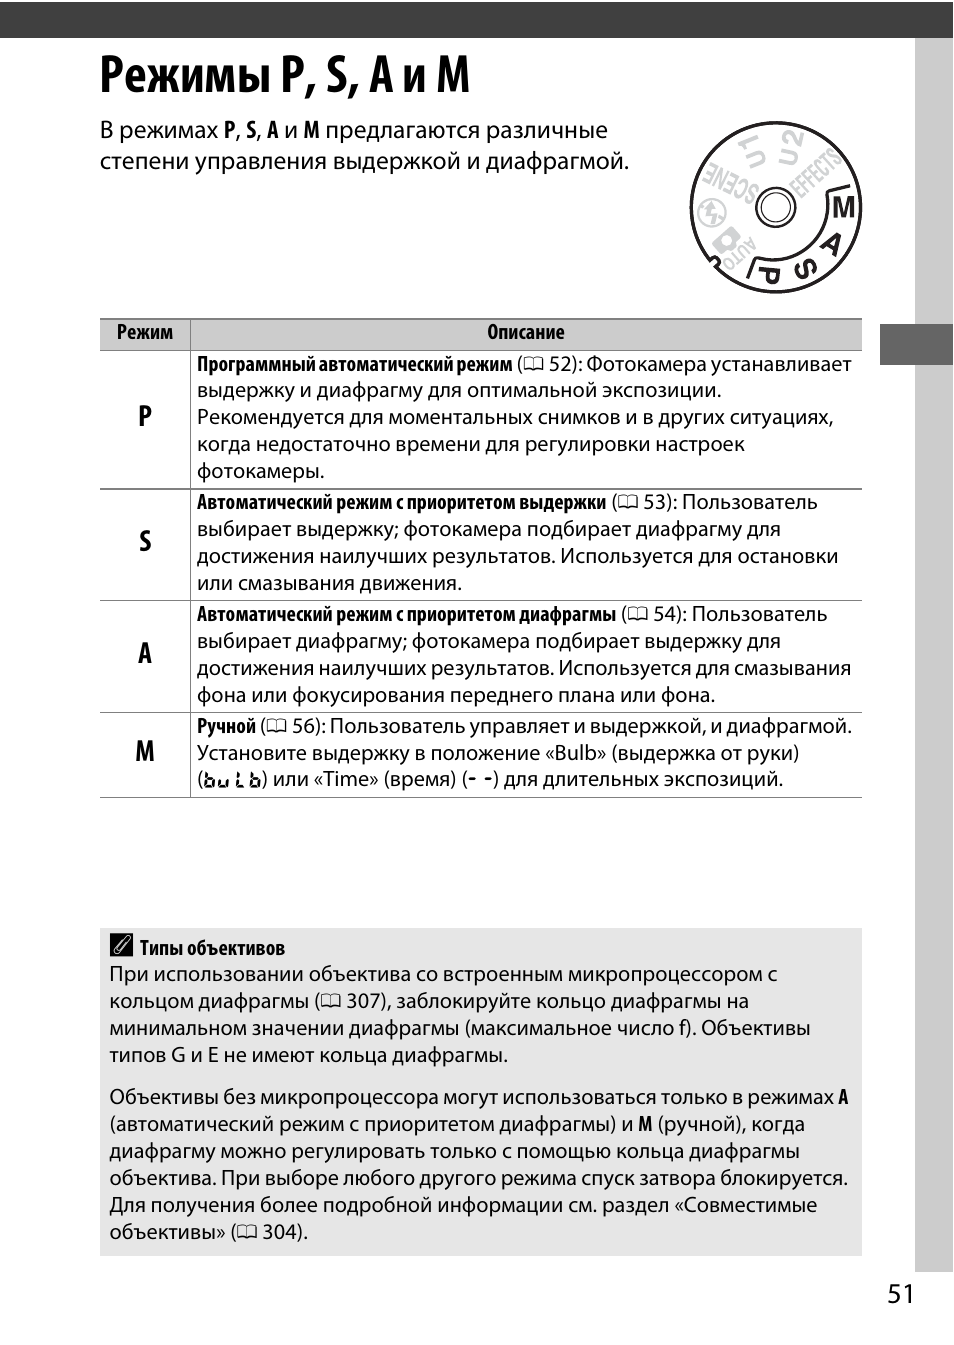 Режимы p, s, a и m | Инструкция по эксплуатации Nikon D7200 body | Страница 75 / 420